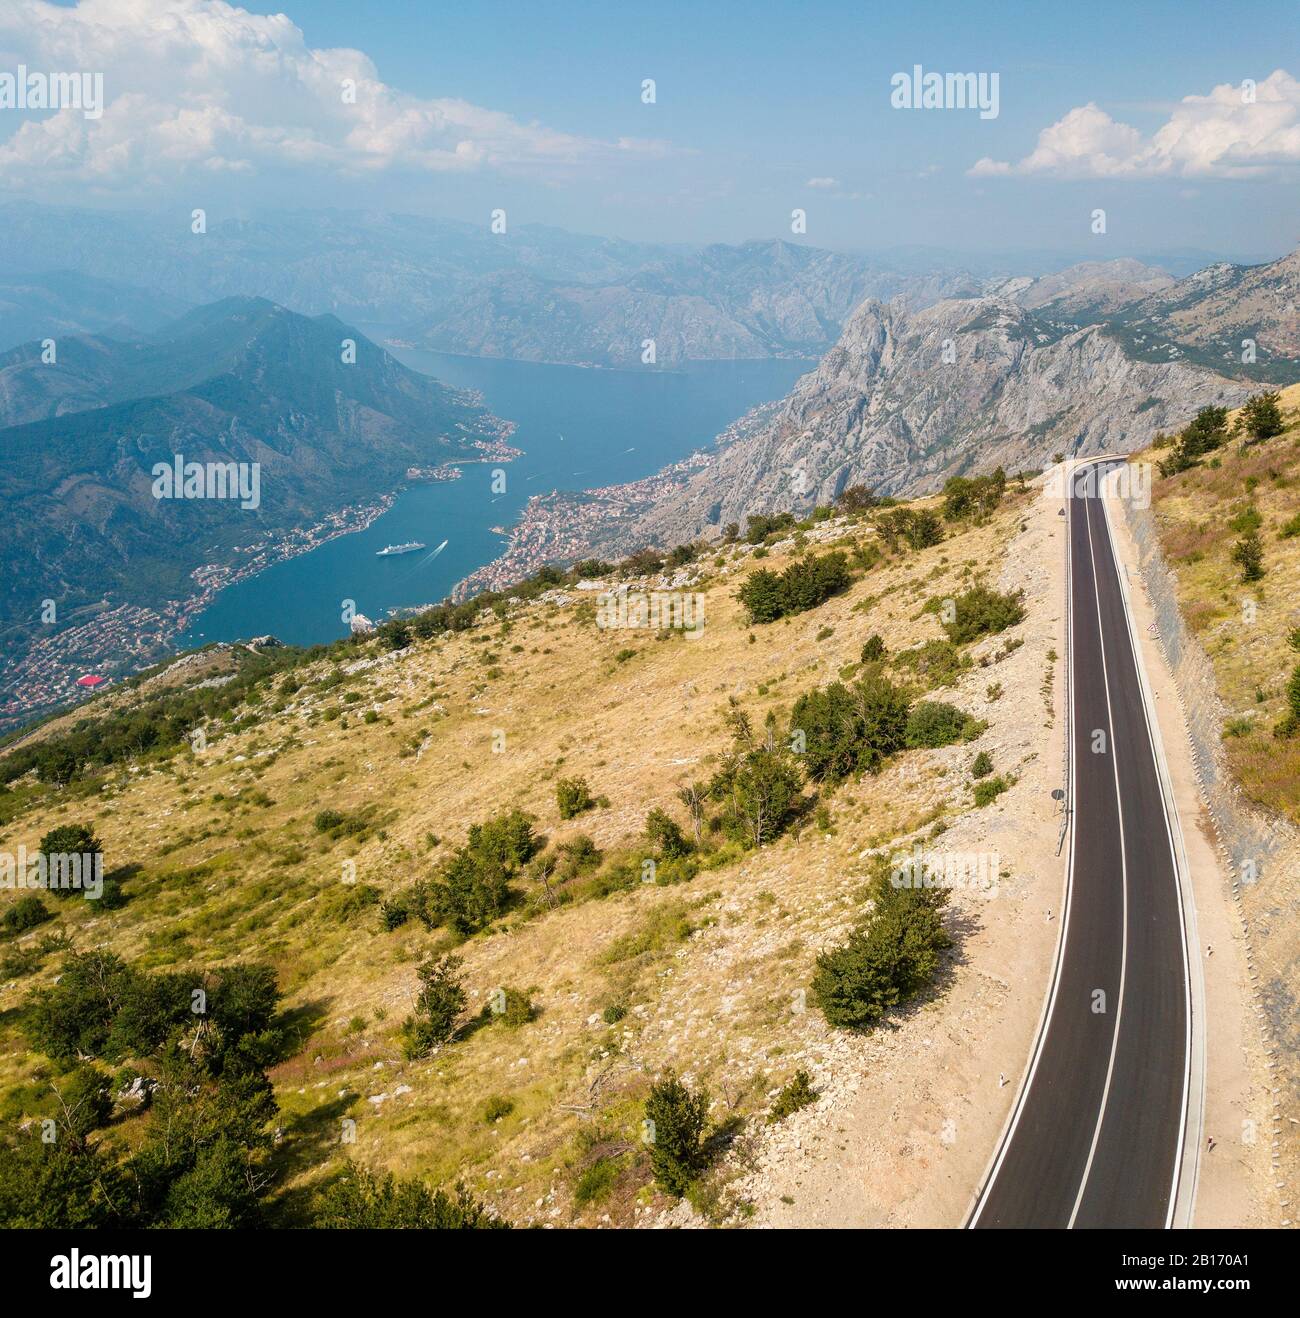 Luftbild zur Bucht von Kotor, Boka. Malerische Straße mit Blick auf die Bucht des Kotor-Fjords. Kurvenreiche Straßen, um Montenegro zu entdecken. Tourismus und Kreuzfahrt Stockfoto